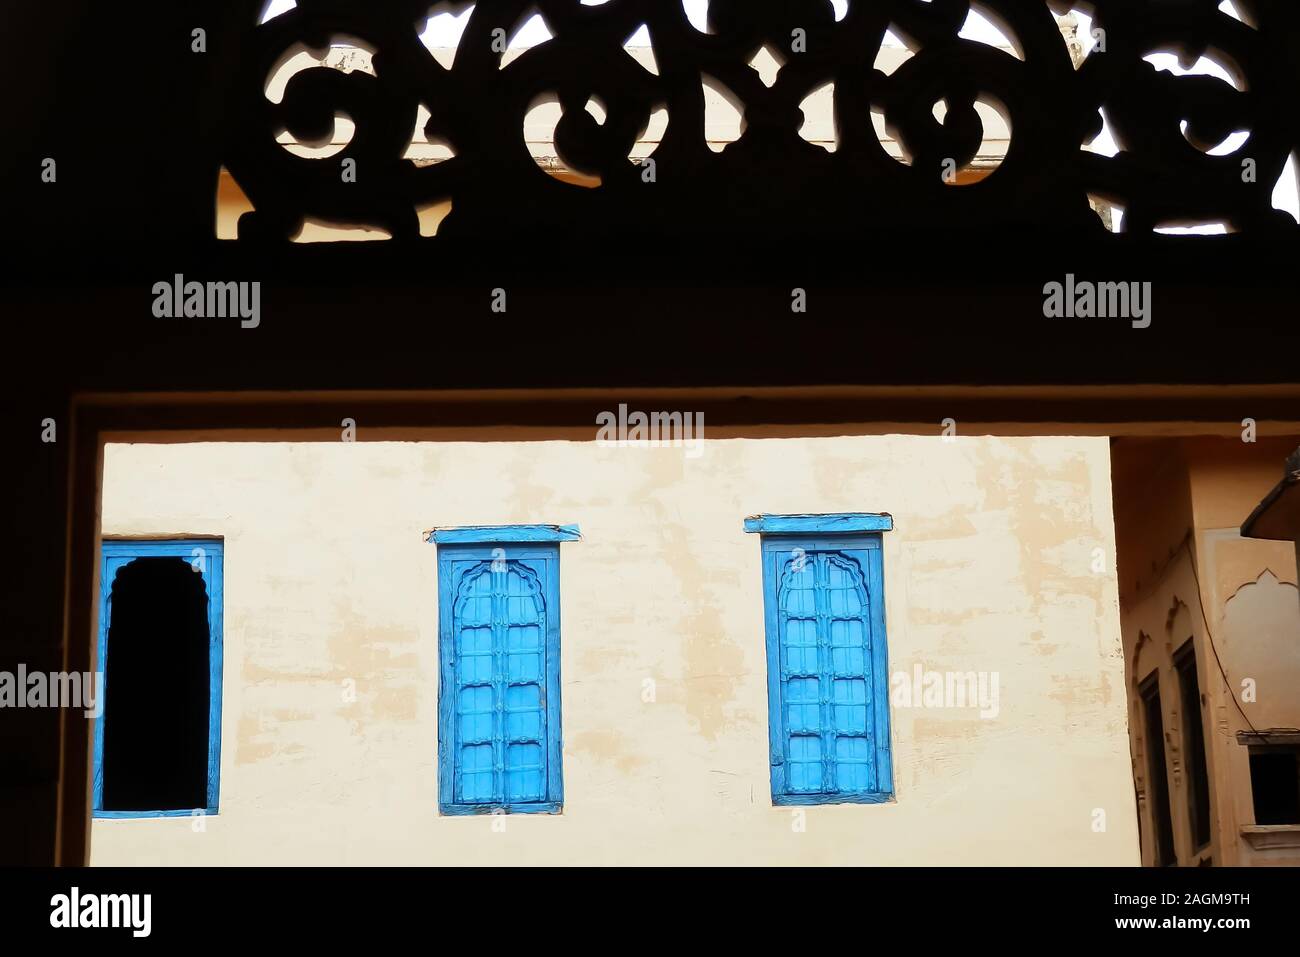 Bunte blue windows durch ein Fenster mit ornamentalen Schnitzereien gesehen, in einem Dorf in der Wüste Thar, Rajasthan, Nordindien. Stockfoto